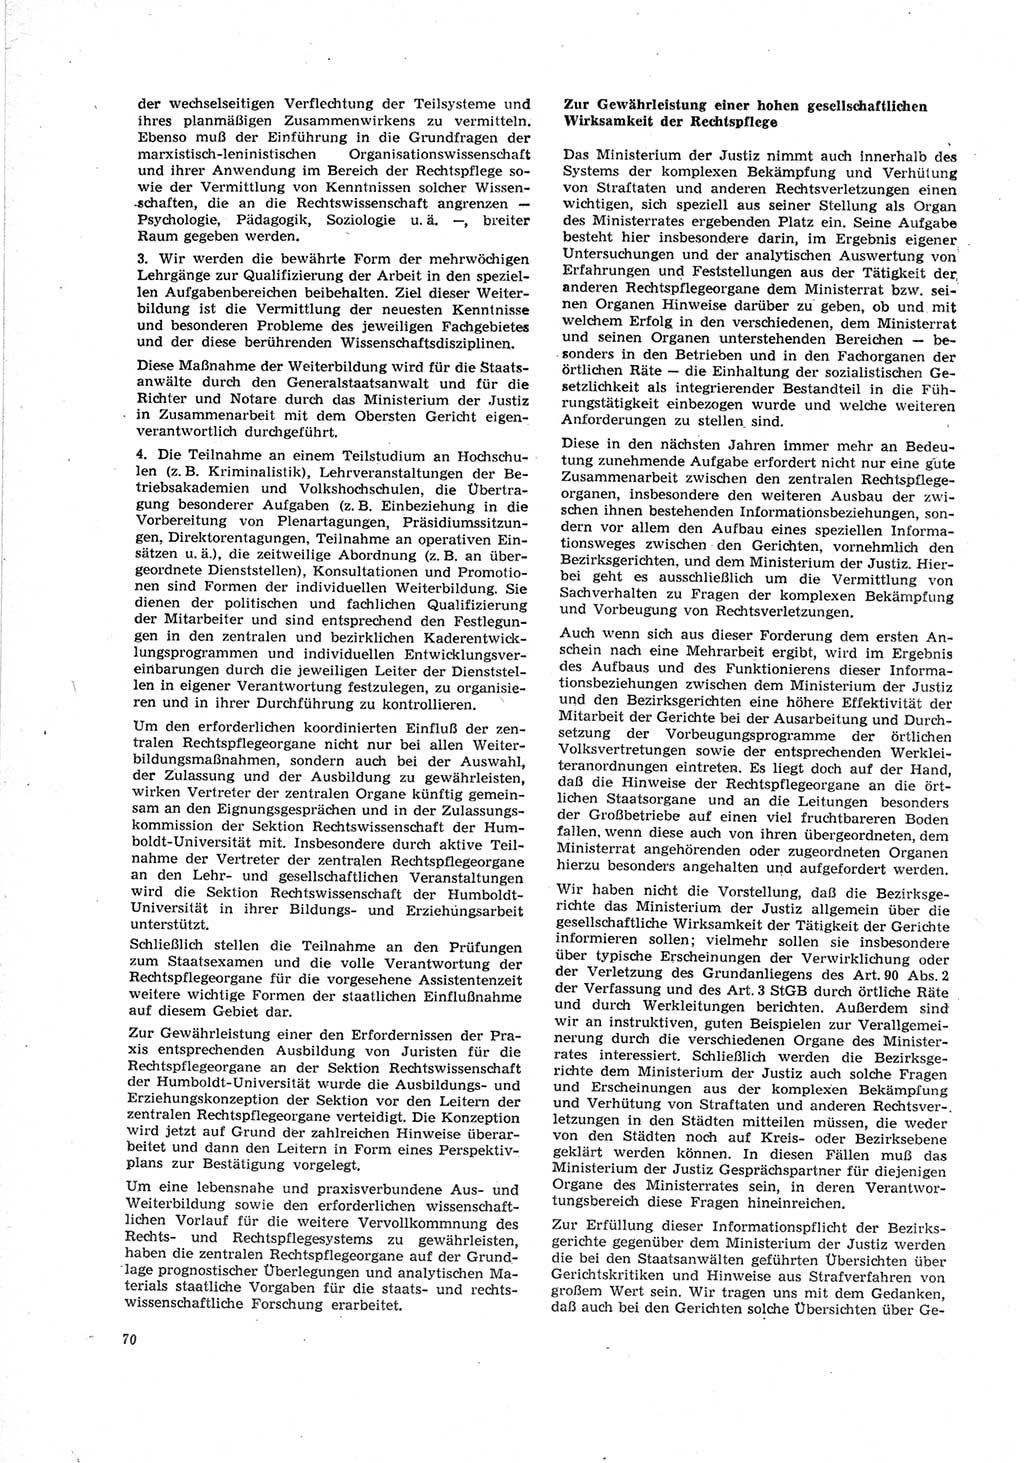 Neue Justiz (NJ), Zeitschrift für Recht und Rechtswissenschaft [Deutsche Demokratische Republik (DDR)], 23. Jahrgang 1969, Seite 70 (NJ DDR 1969, S. 70)